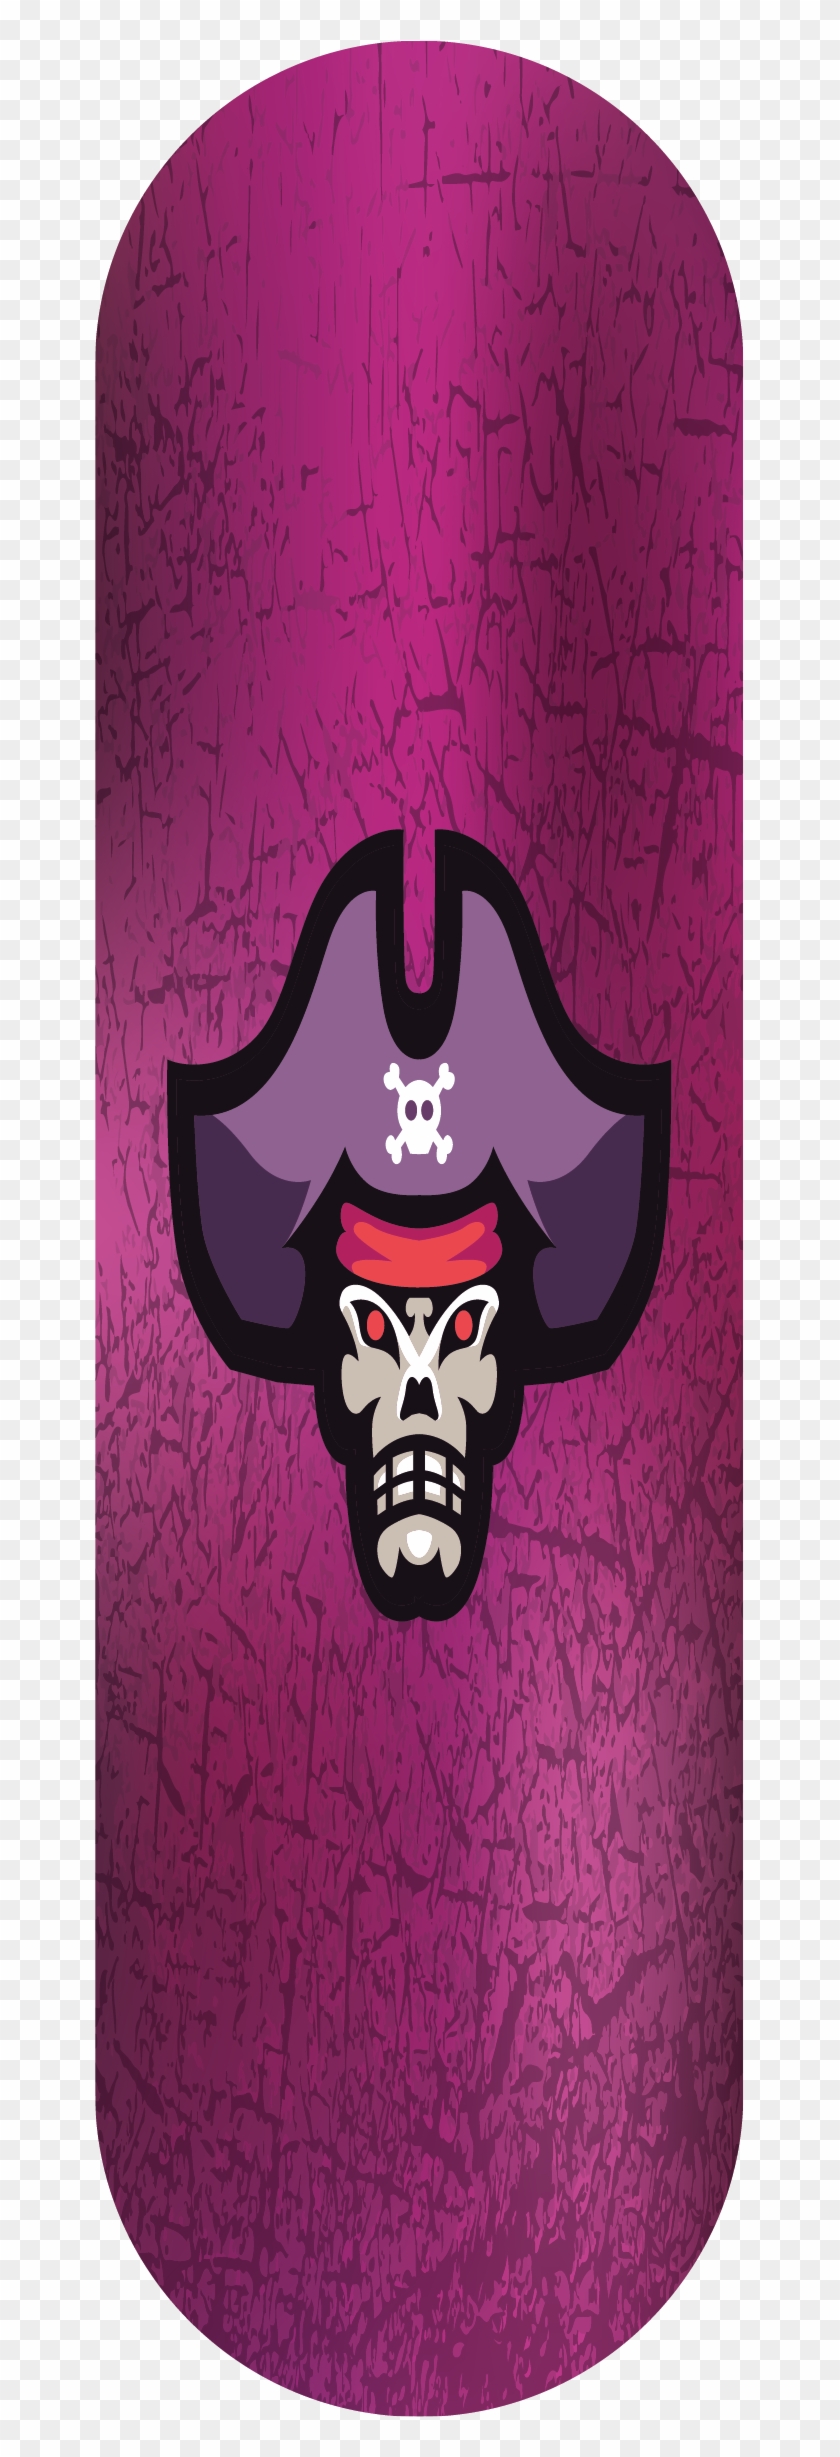 Pirate Slider - Skull Clipart #3534224